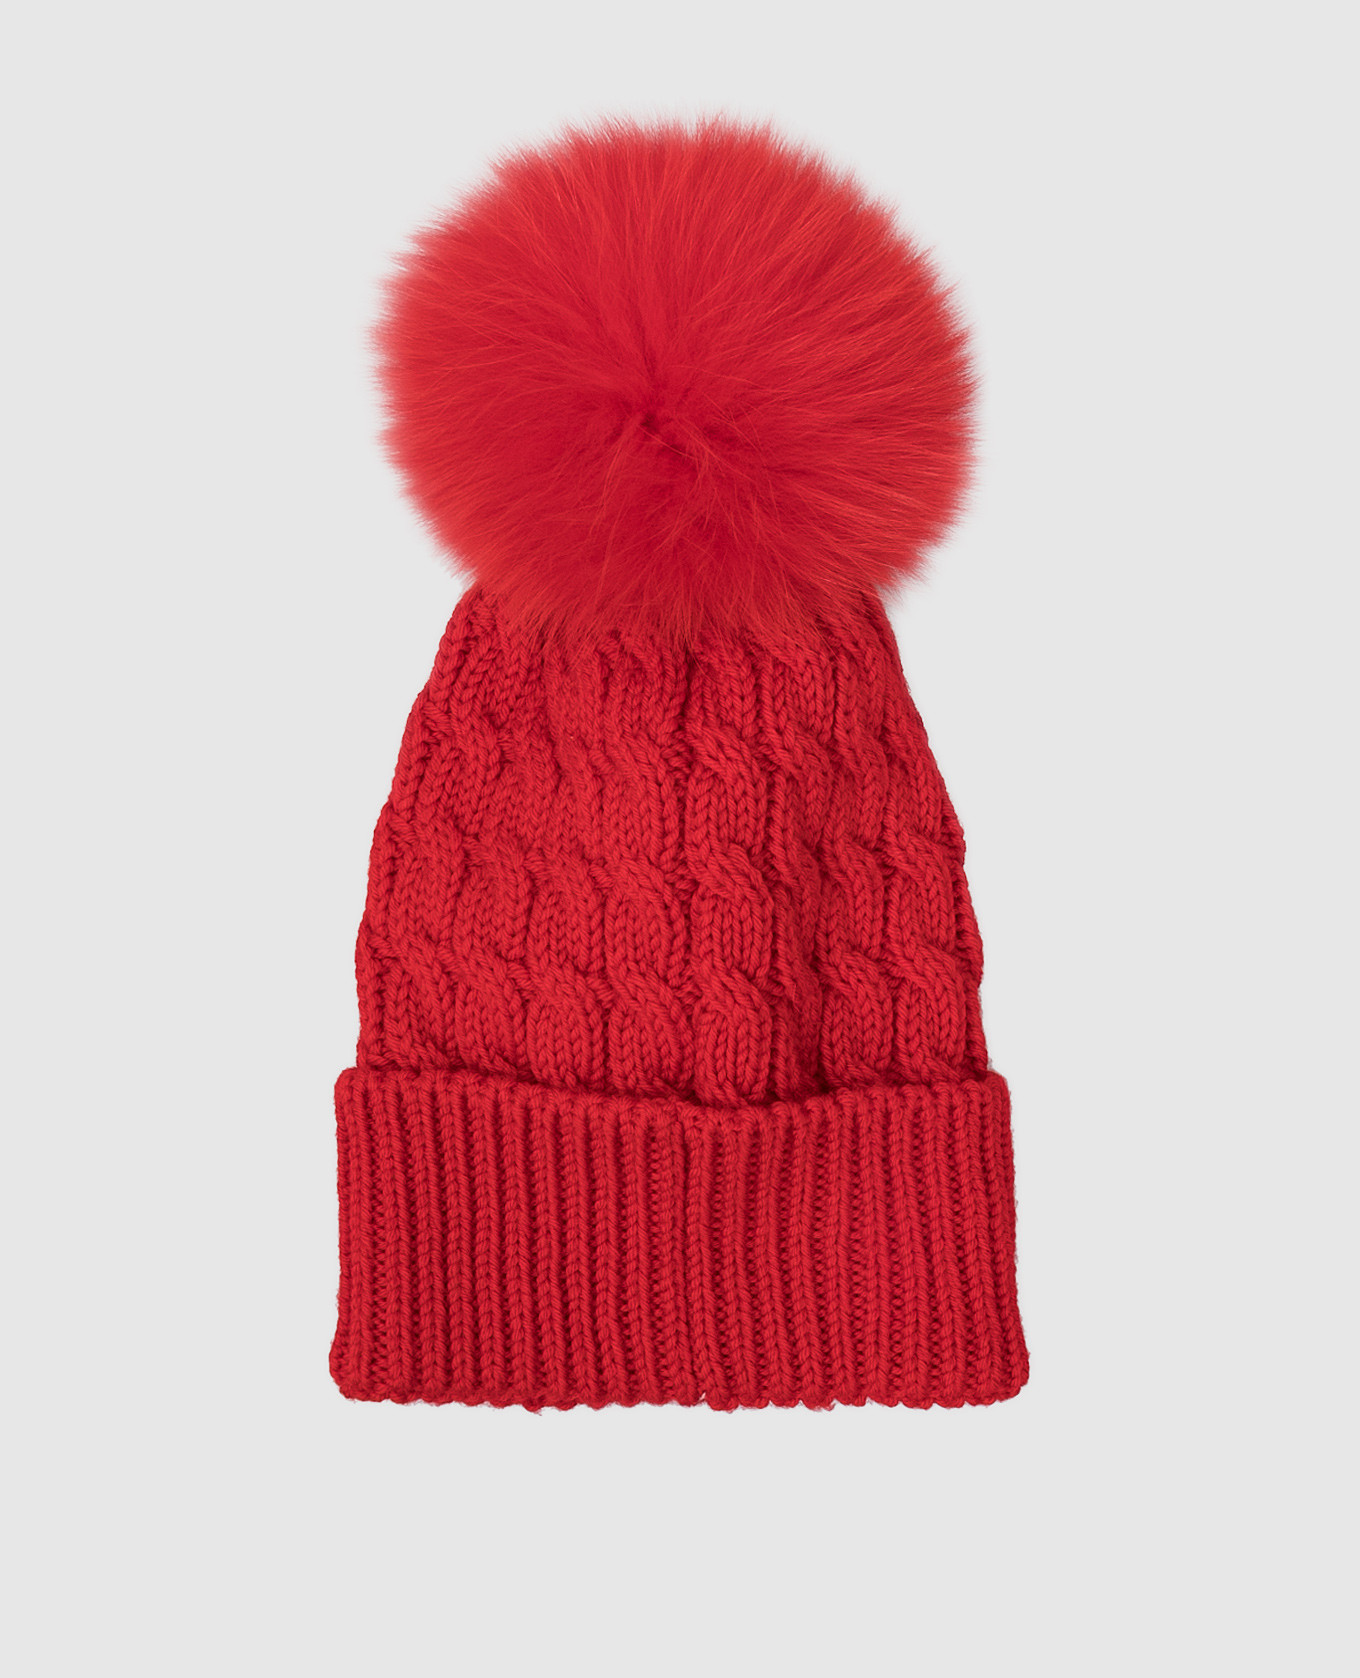 Moncler Grenoble Красная шапка из шерсти с мехом лисы 3B700010402A изображение 3